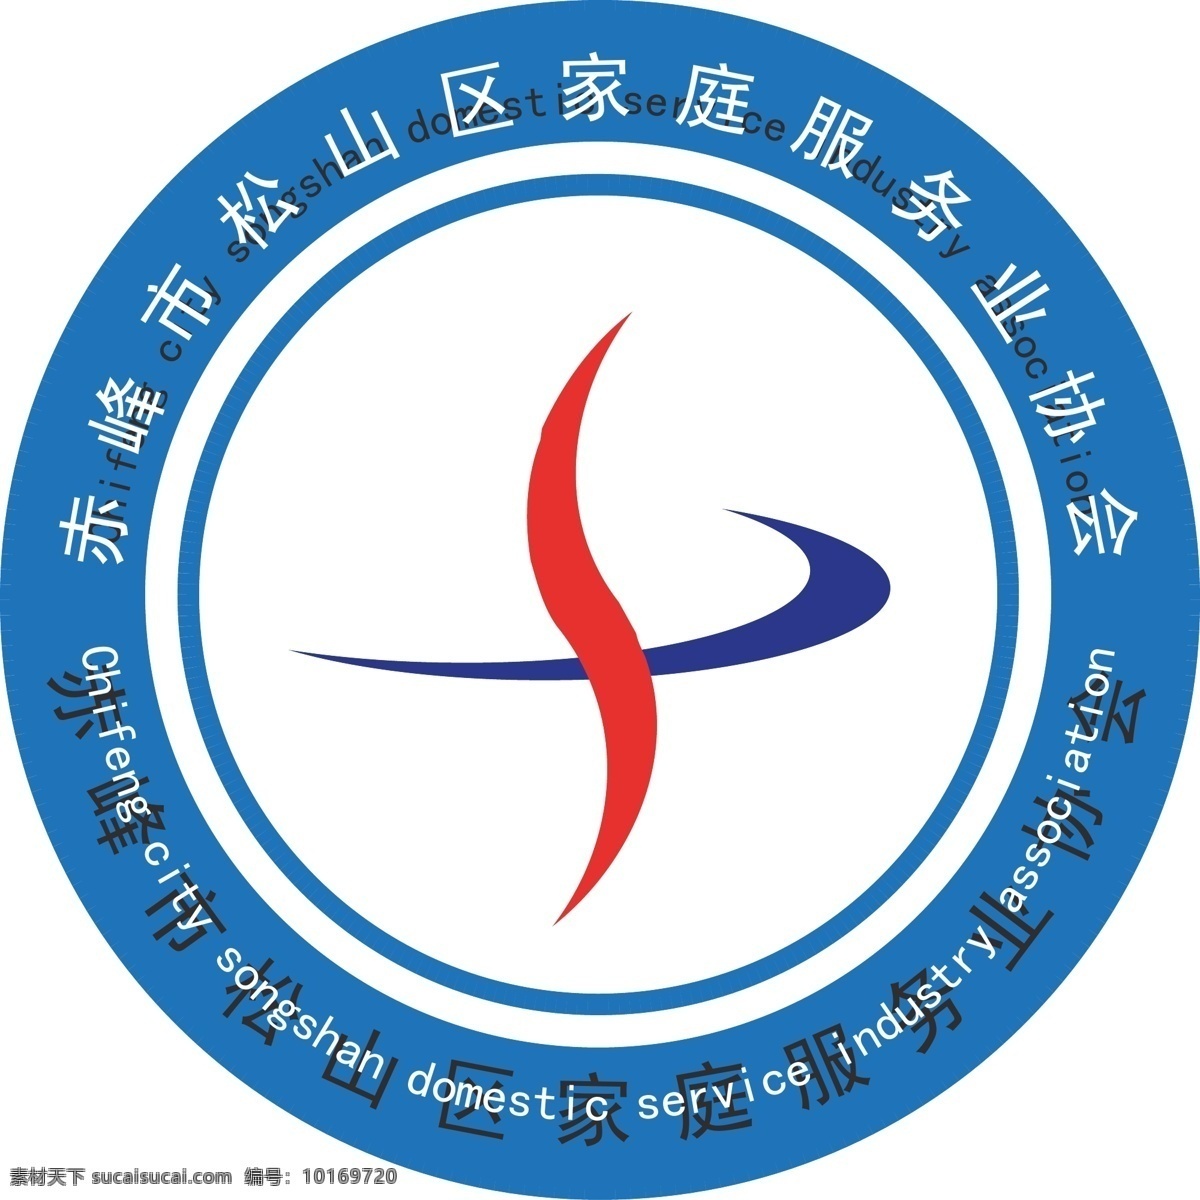 家庭服务 协会 logo 家政服务 家政logo 服务logo 白色